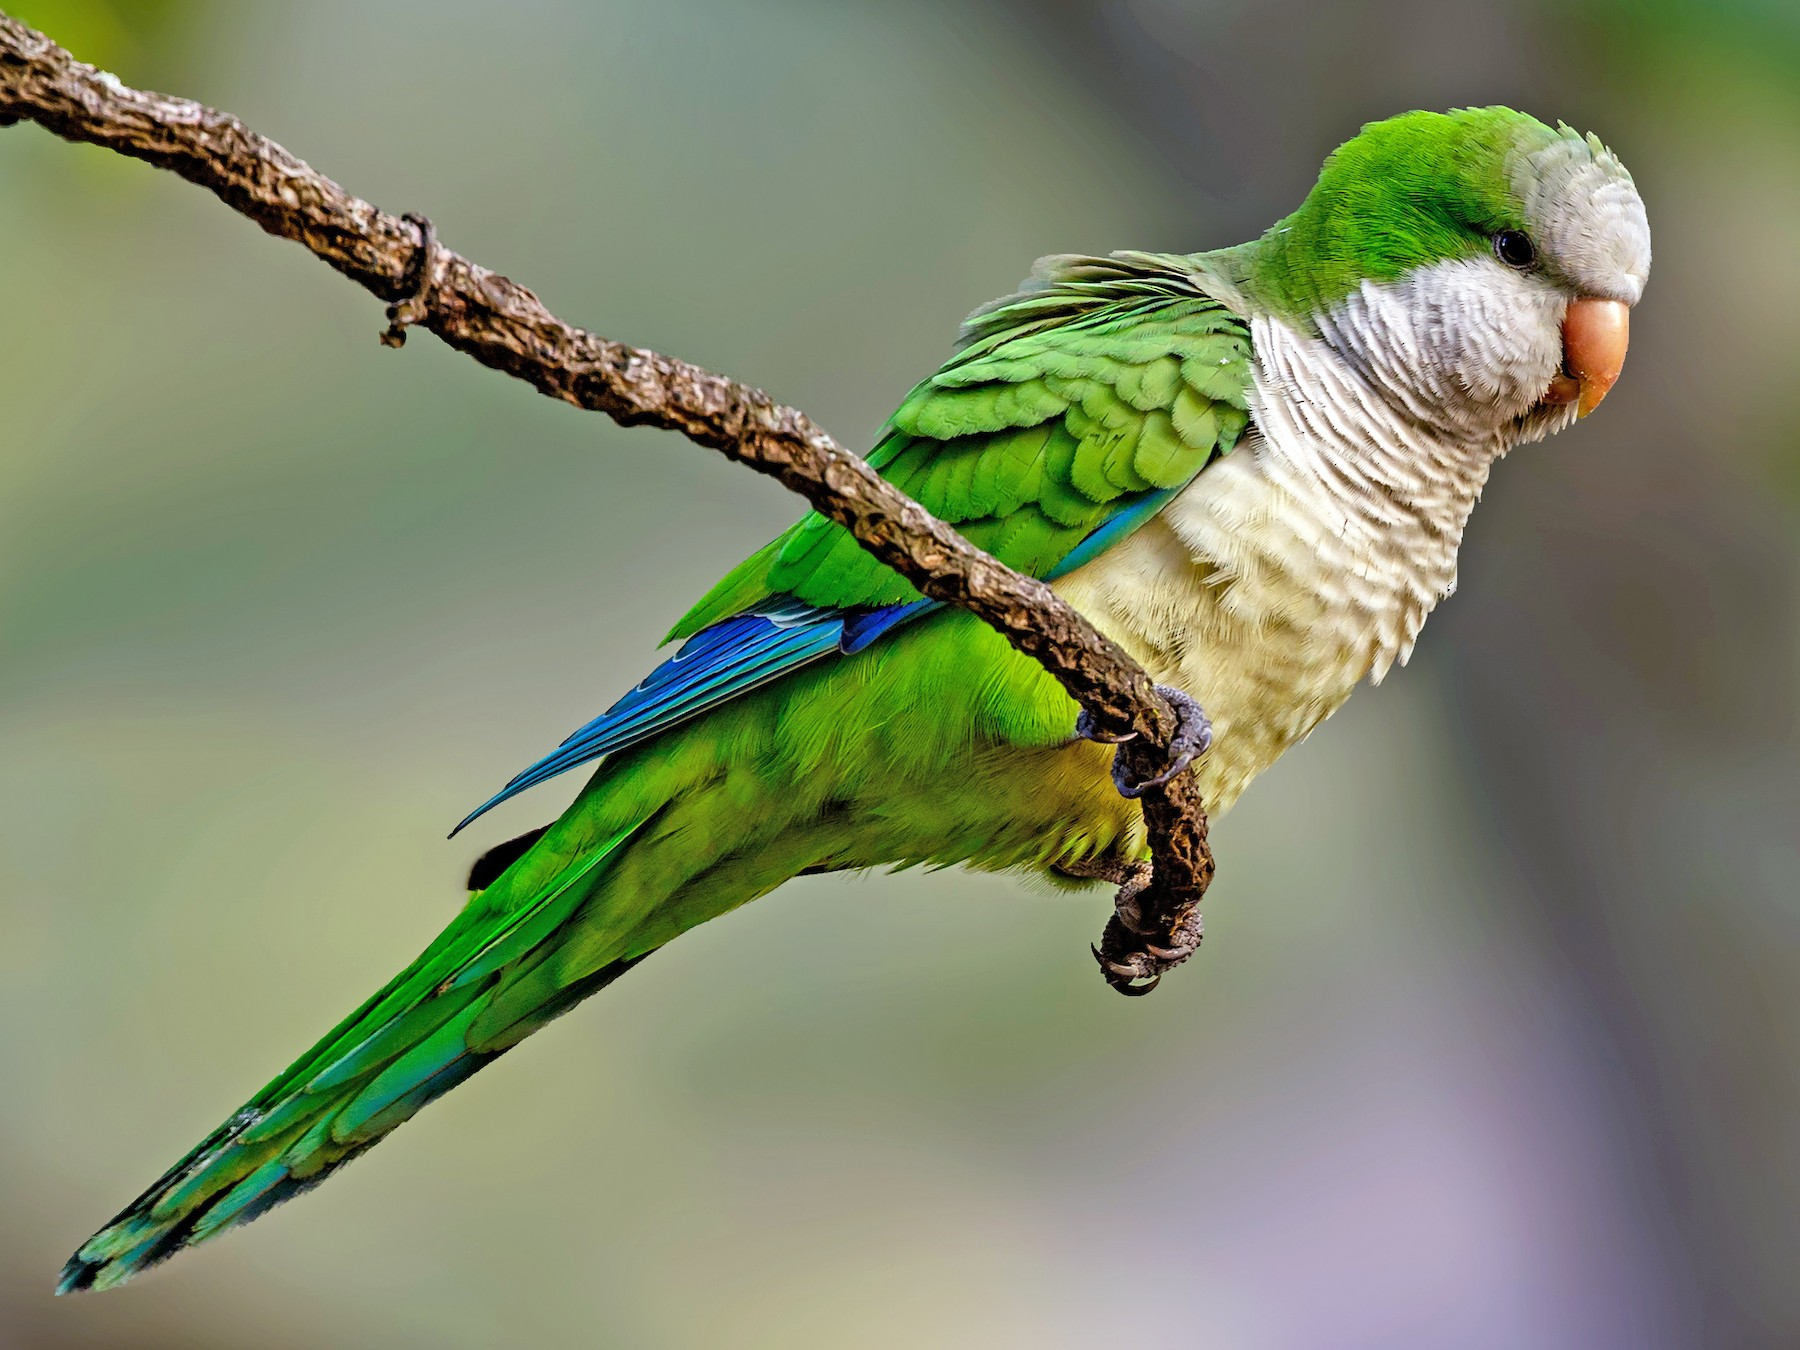 quaker parrots, bird, birds prefer to eat